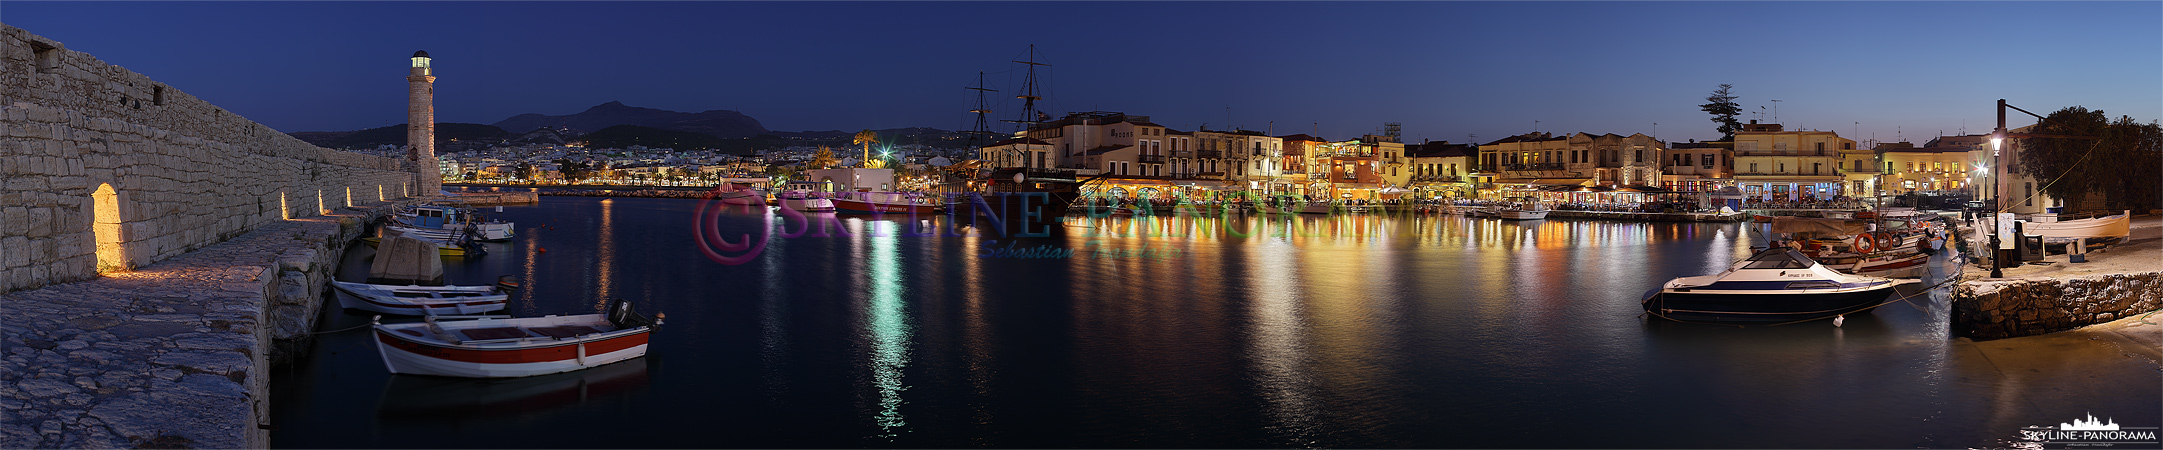 Panorama Bild aus dem venezianischen Hafen von Rethymnon am Abend, der Besuch eines der ursprünglichen Restaurants am Hafenbecken ist unbedingt zu empfehlen. 